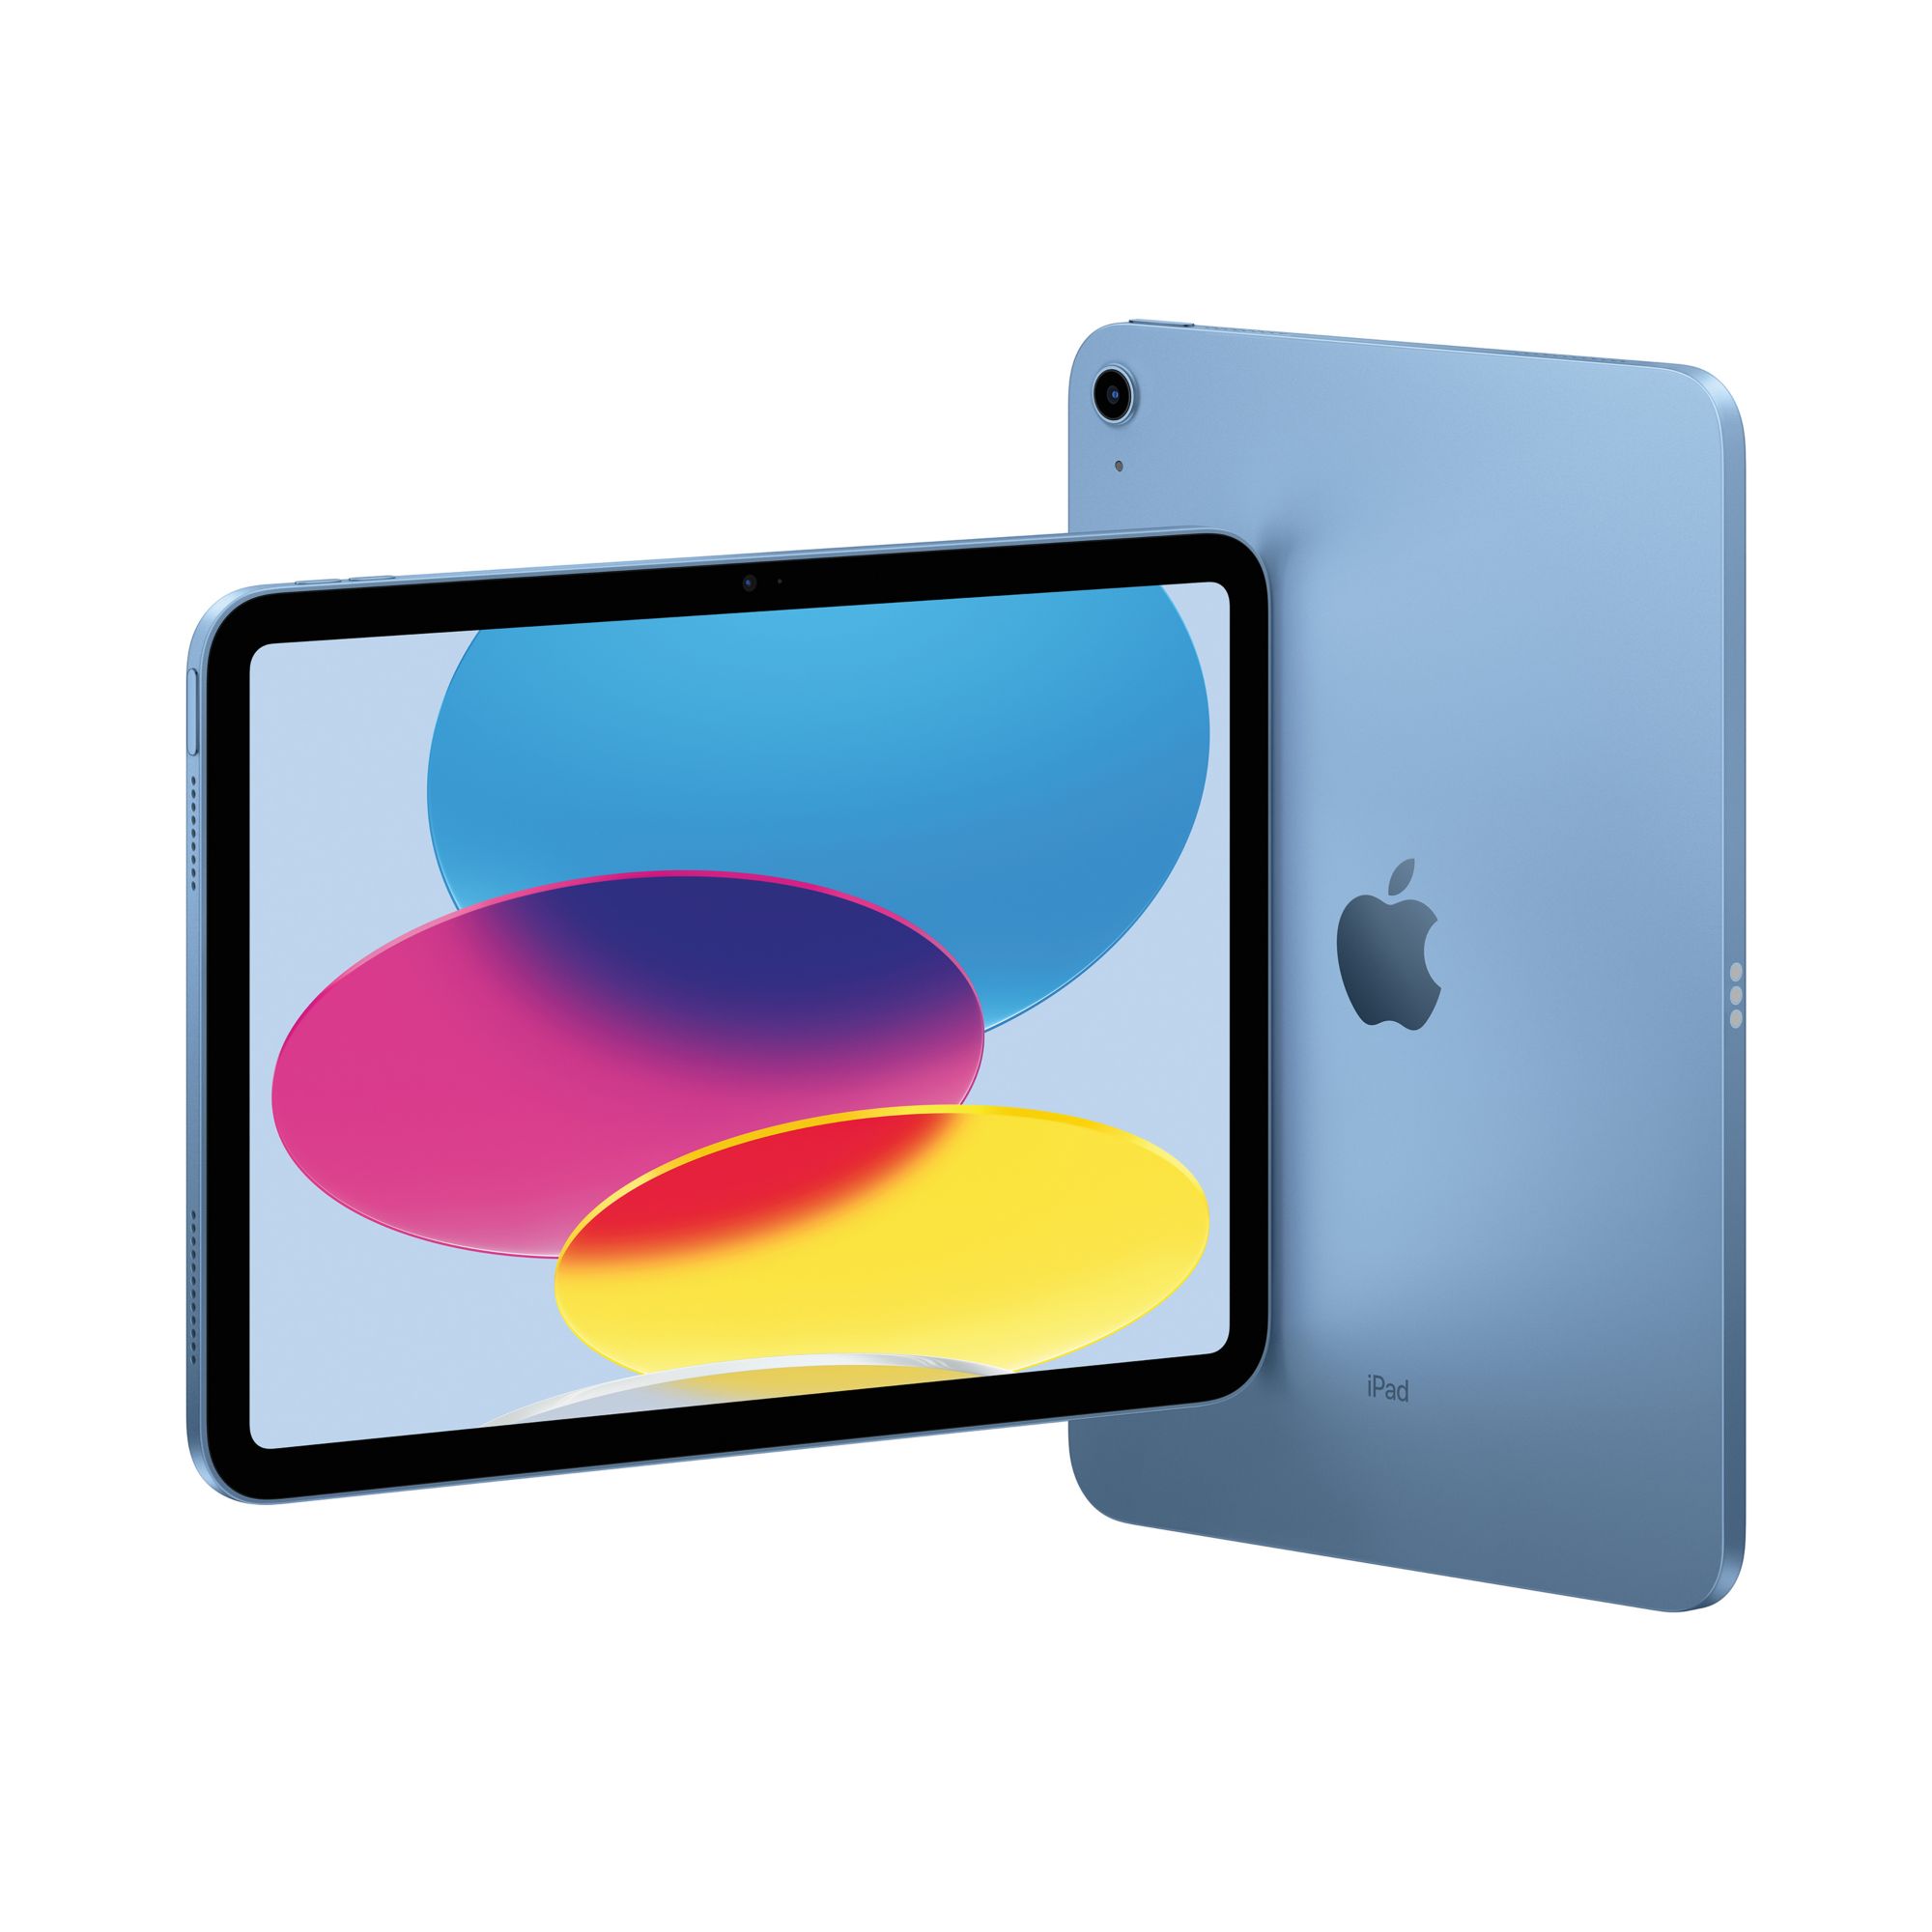 Apple iPad mini, 64GB, Wi-Fi - Space Gray | BJ's Wholesale Club